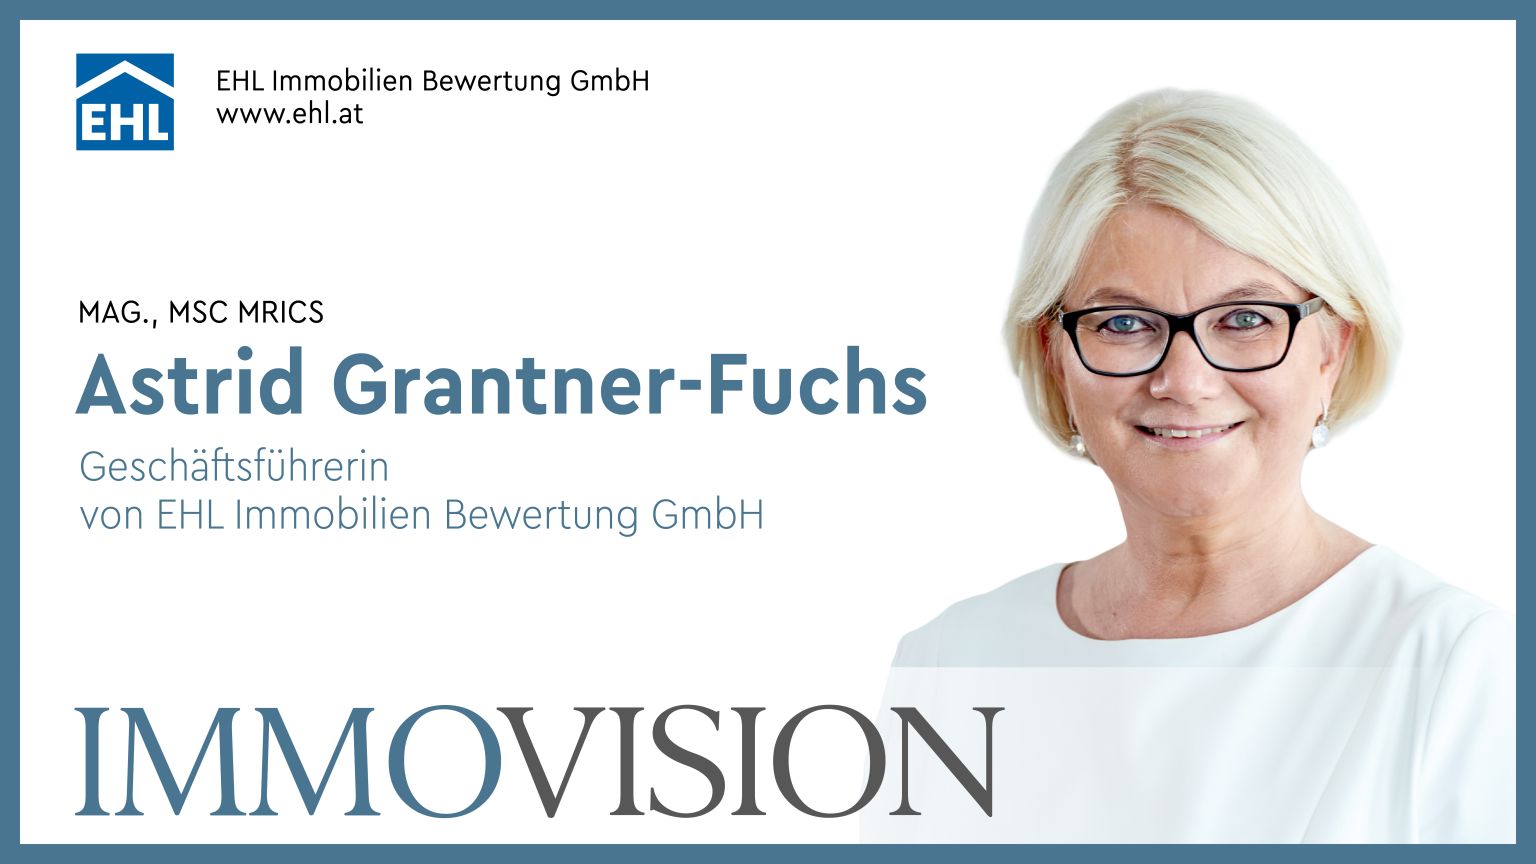 Astrid Grantner-Fuchs